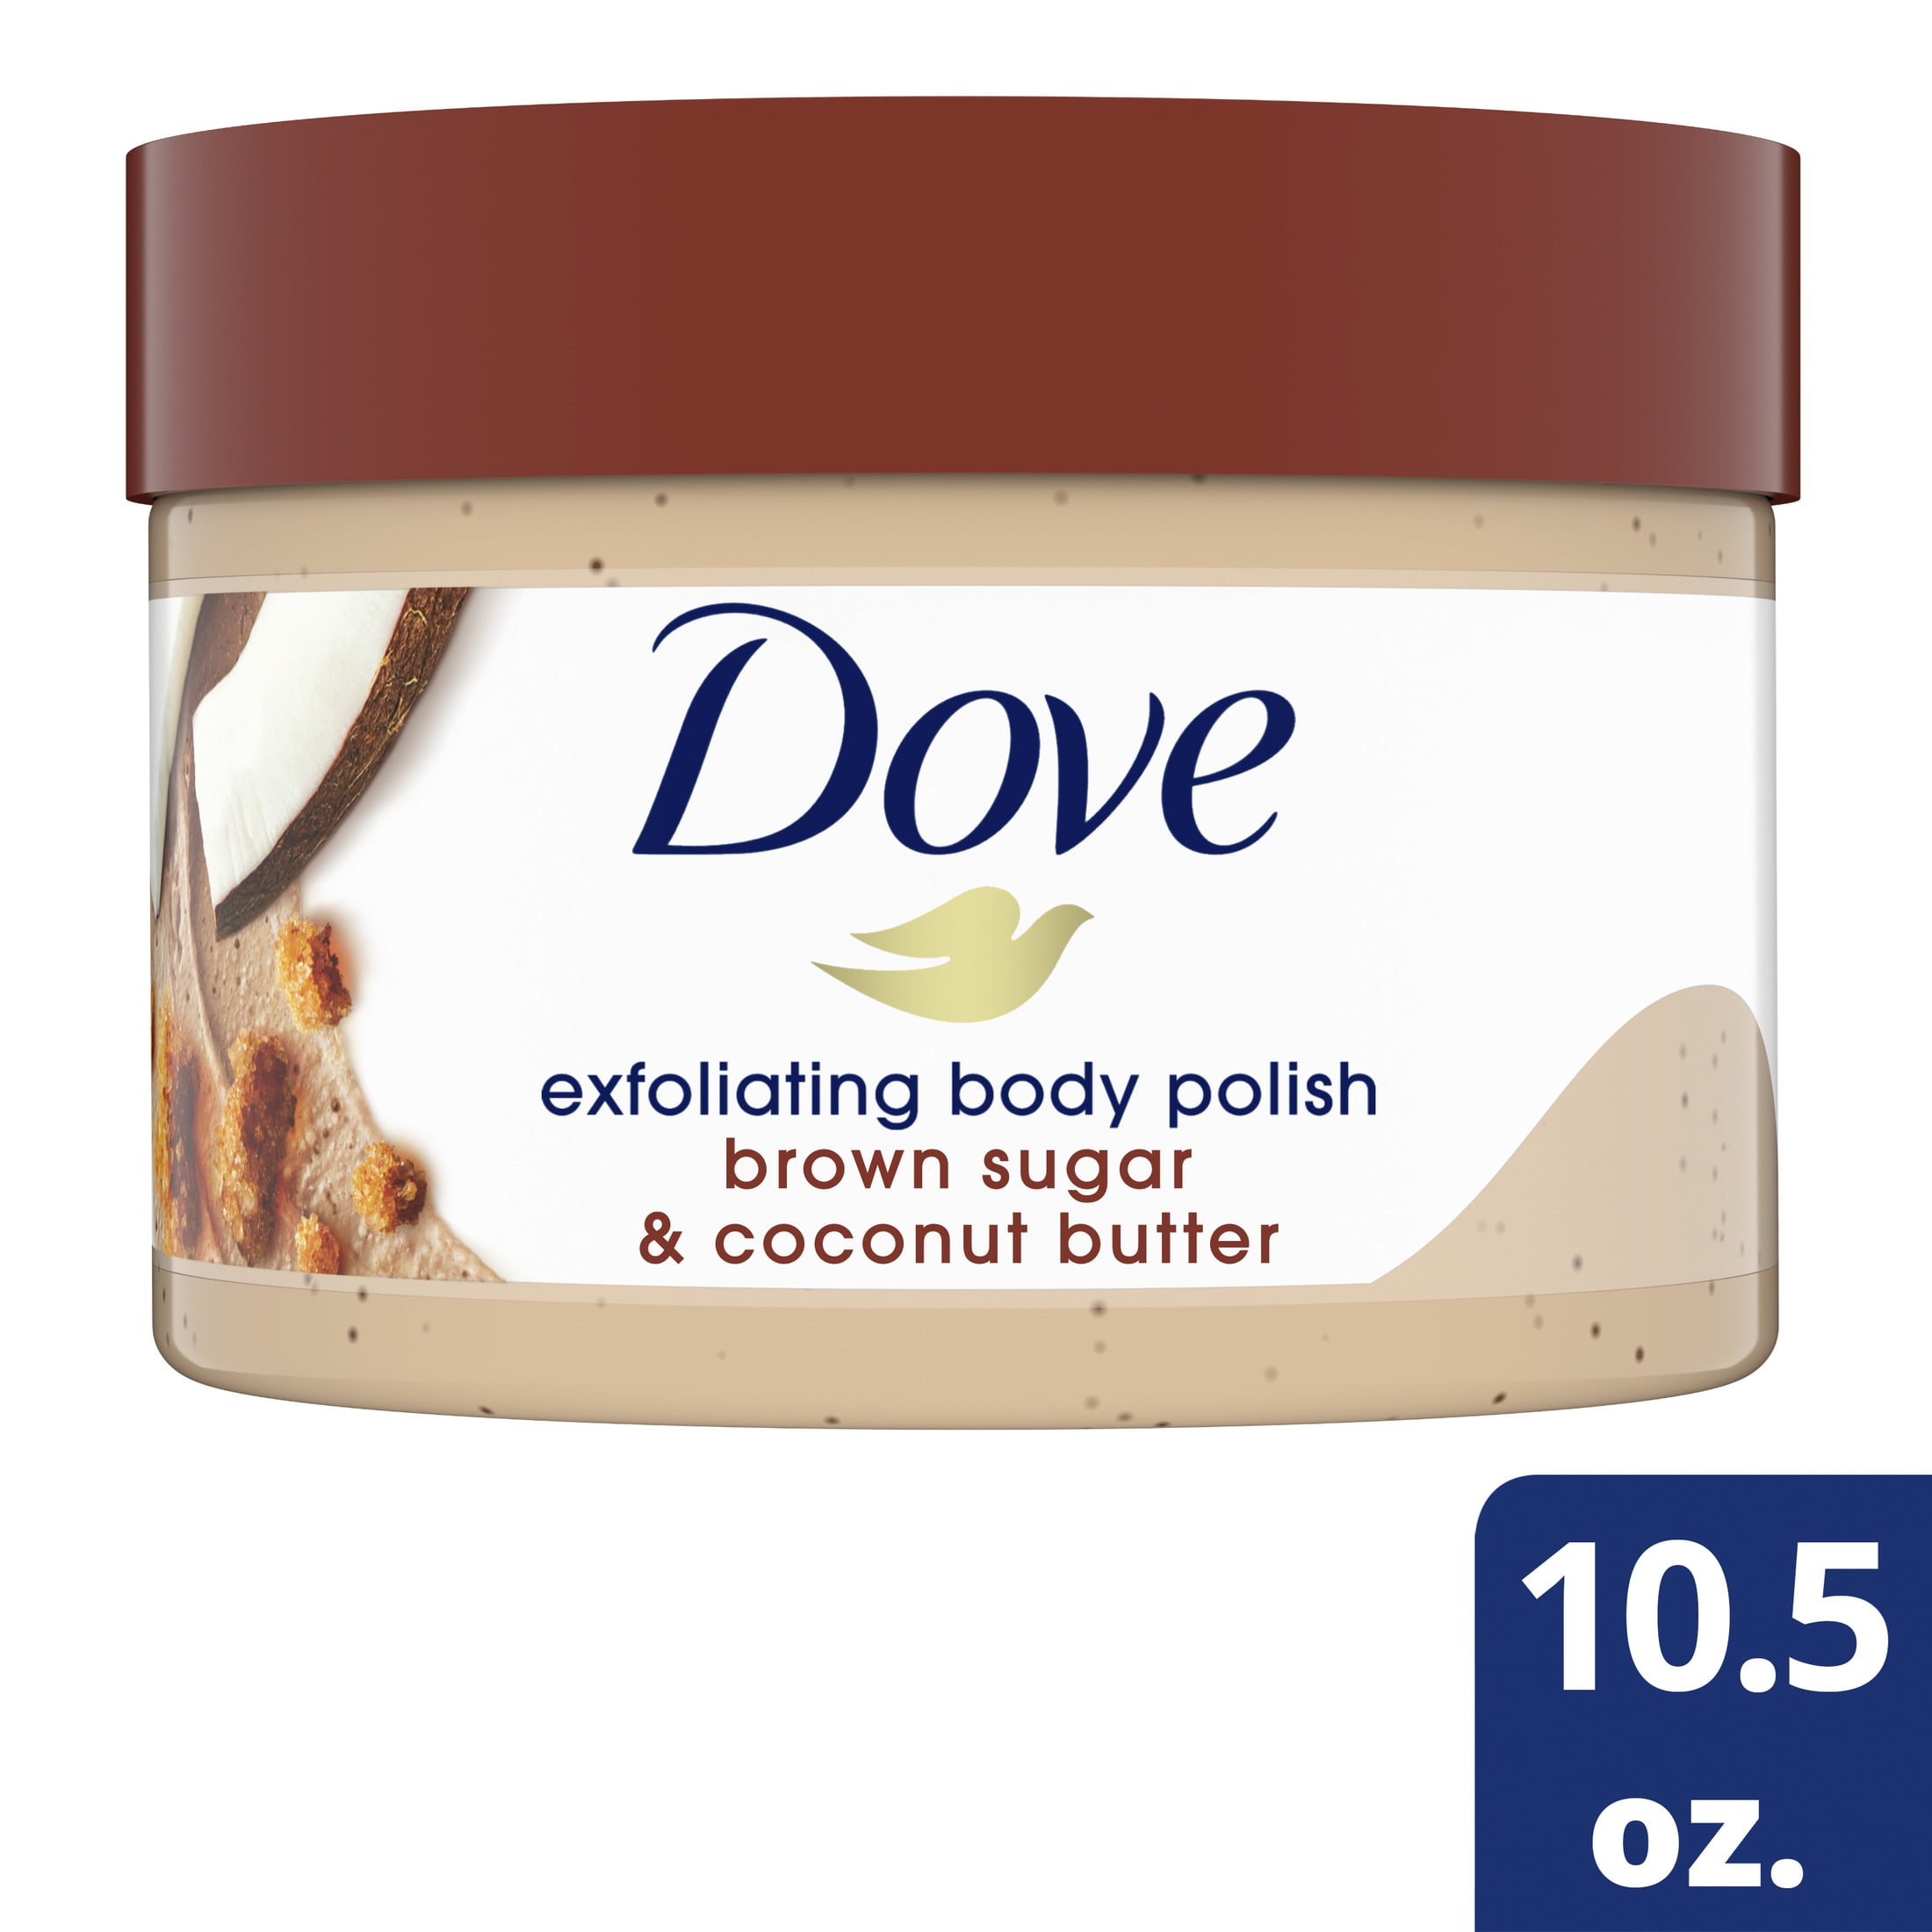 Dove Exfoliating Body Polish Scrub Brown Sugar and Coconut Butter, 10.5 oz pic